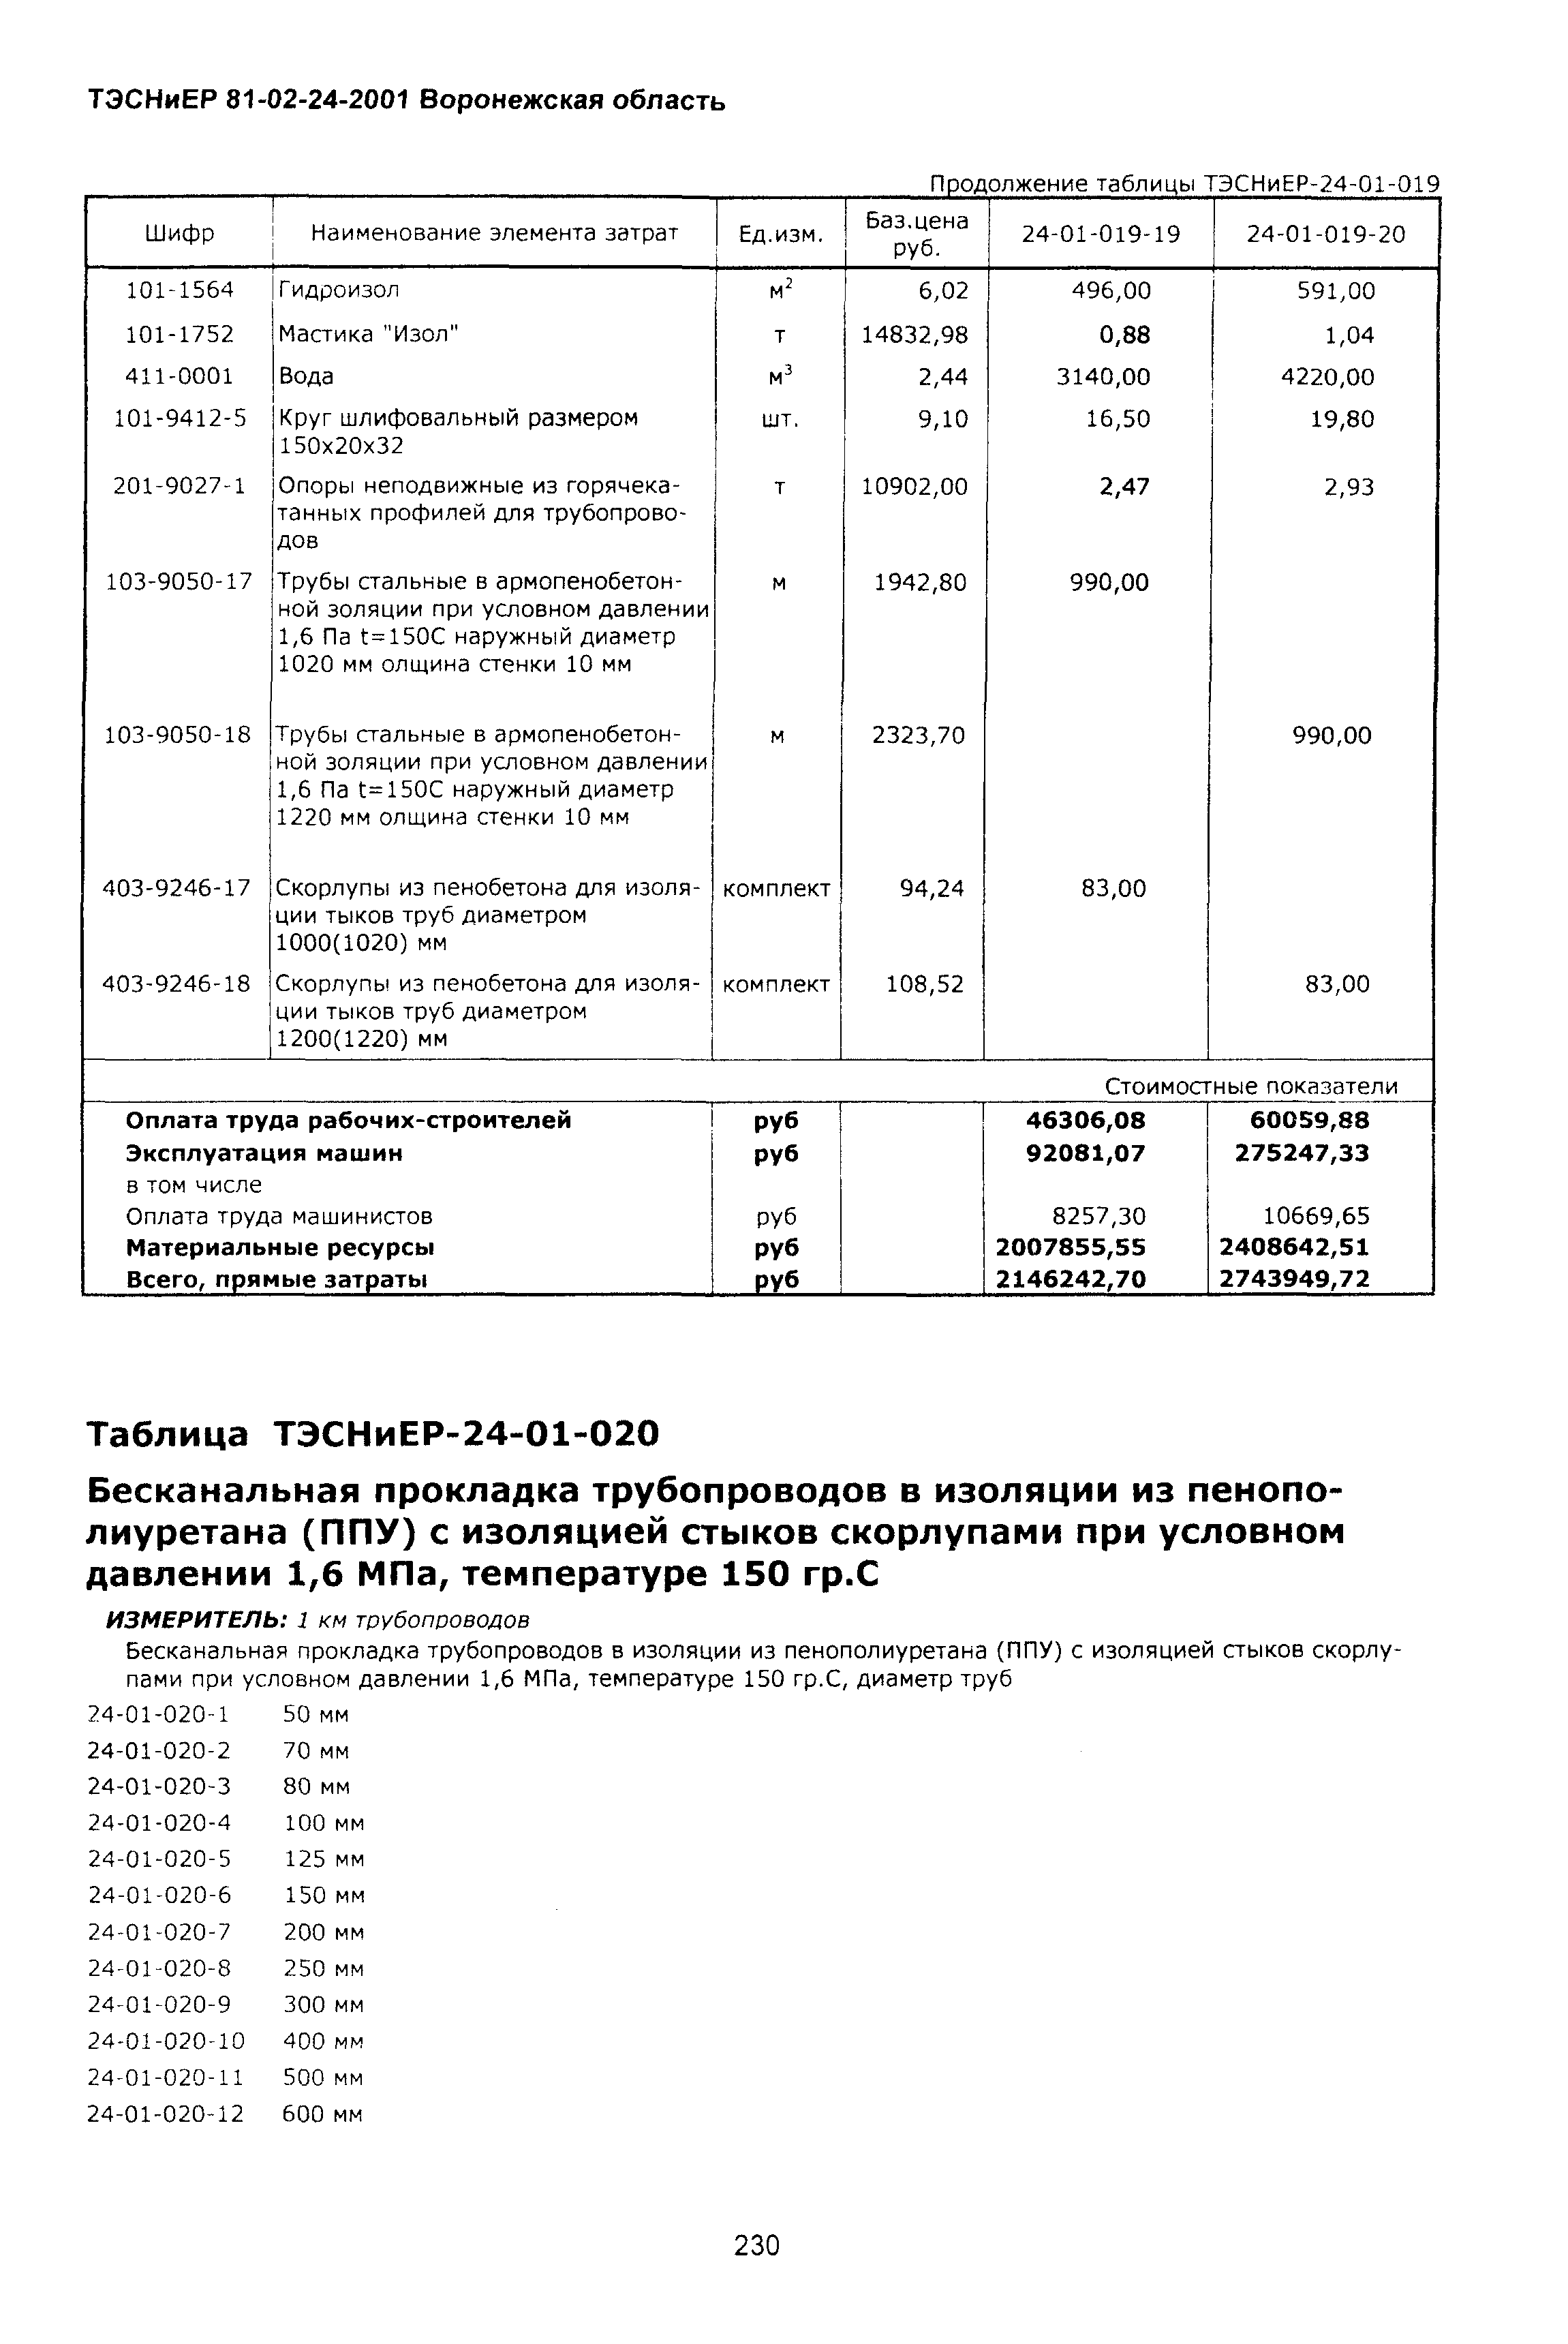 ТЭСНиЕР Воронежской области 81-02-24-2001